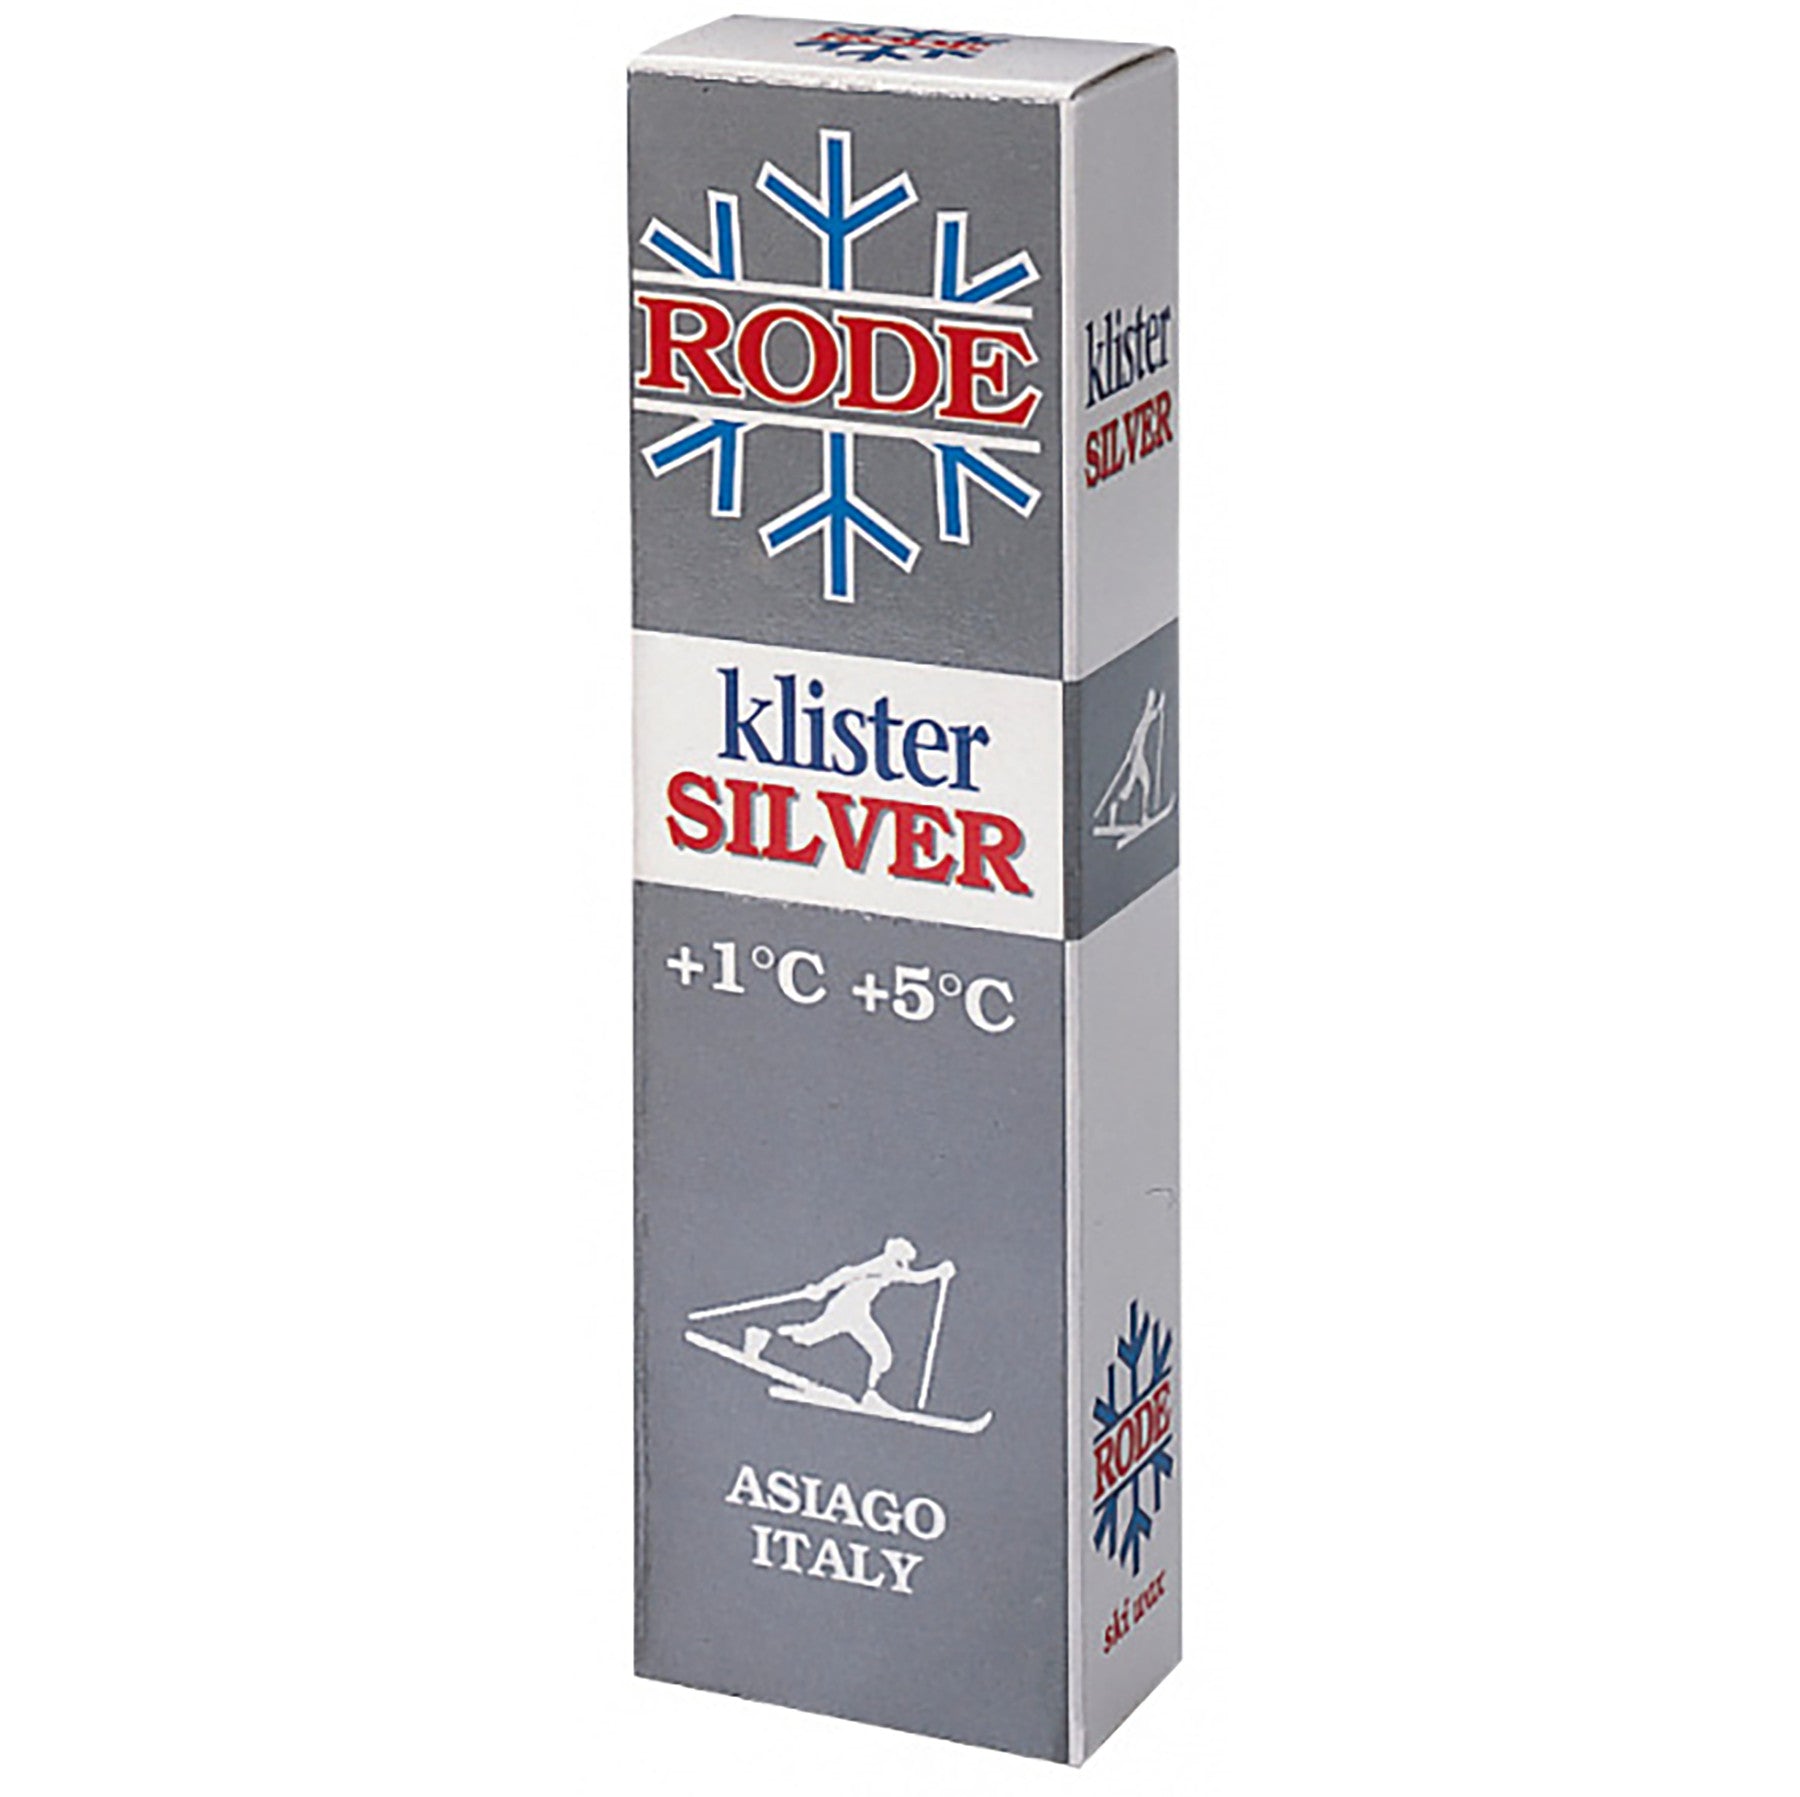 Buy silver-k50 Rode Klister 60g tube